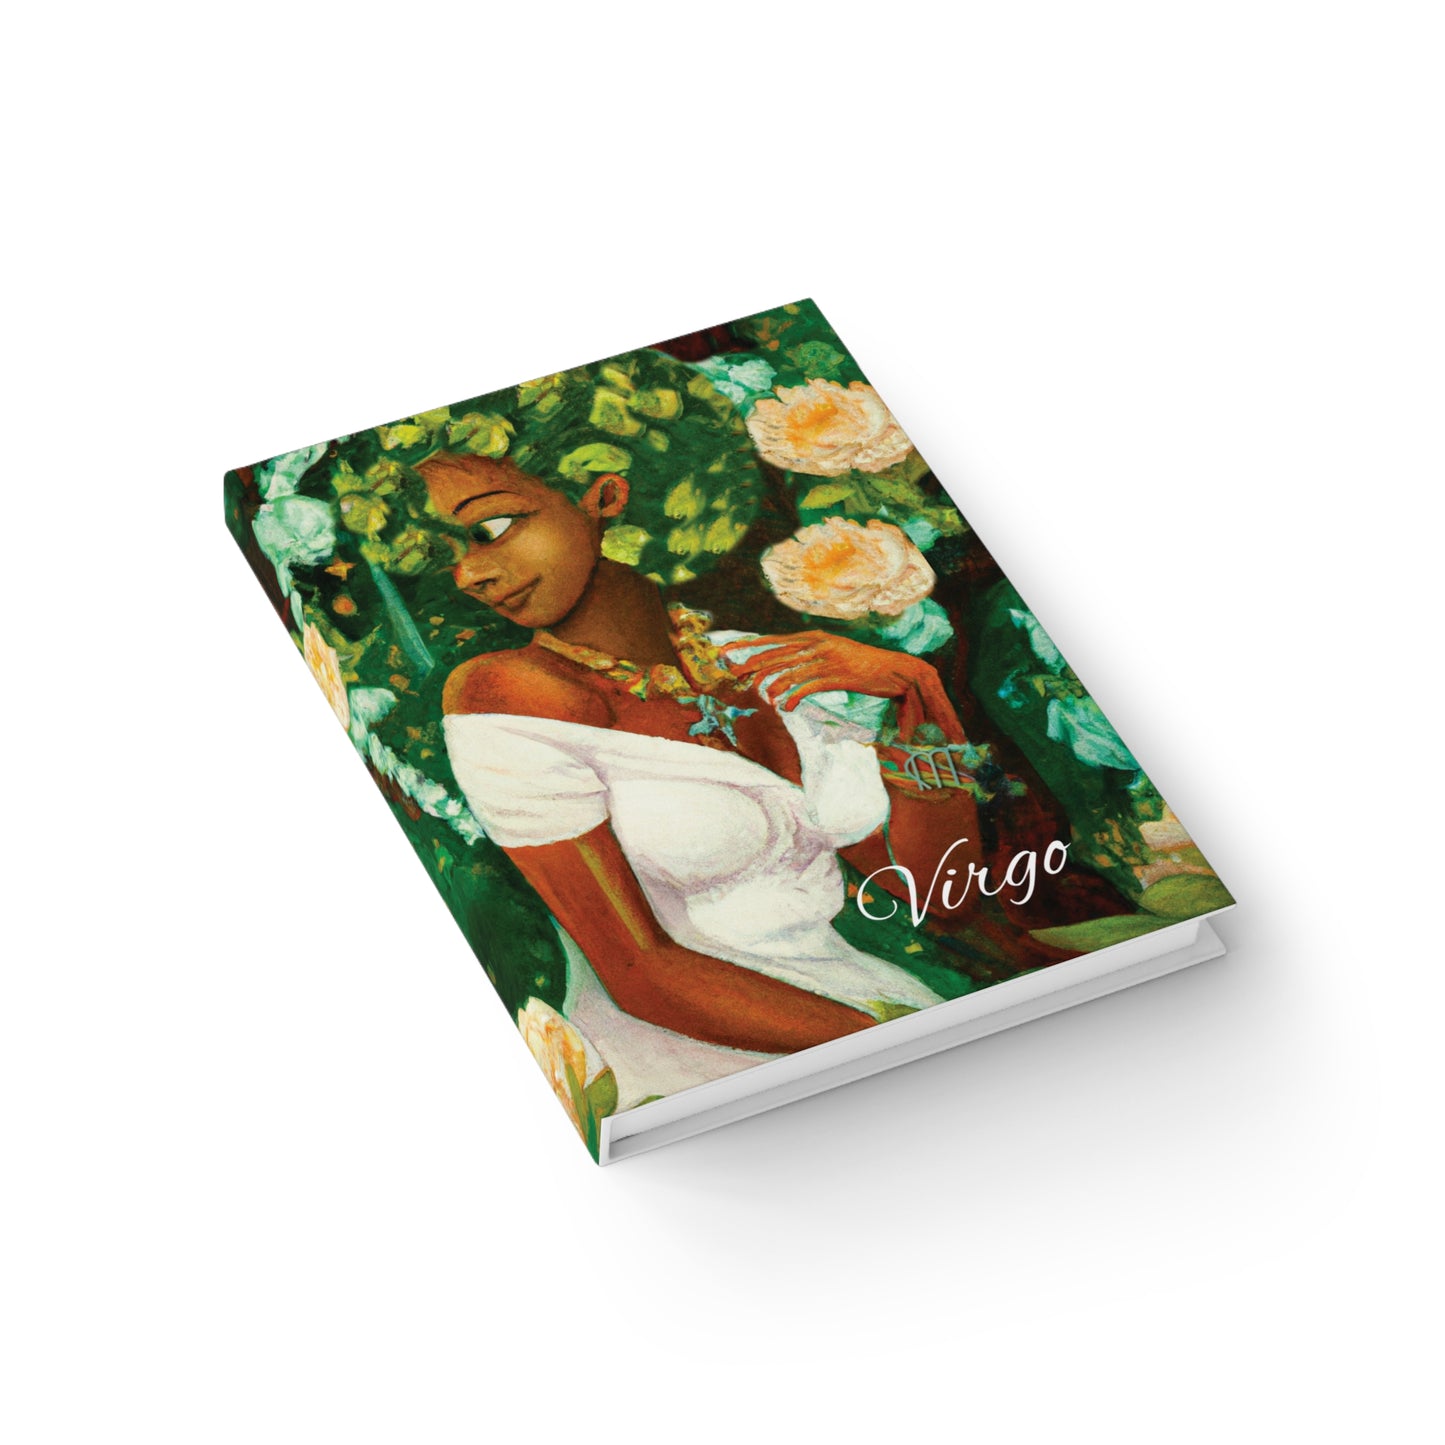 Sapphire Virgo  Hardcover Journal - Ruled Line